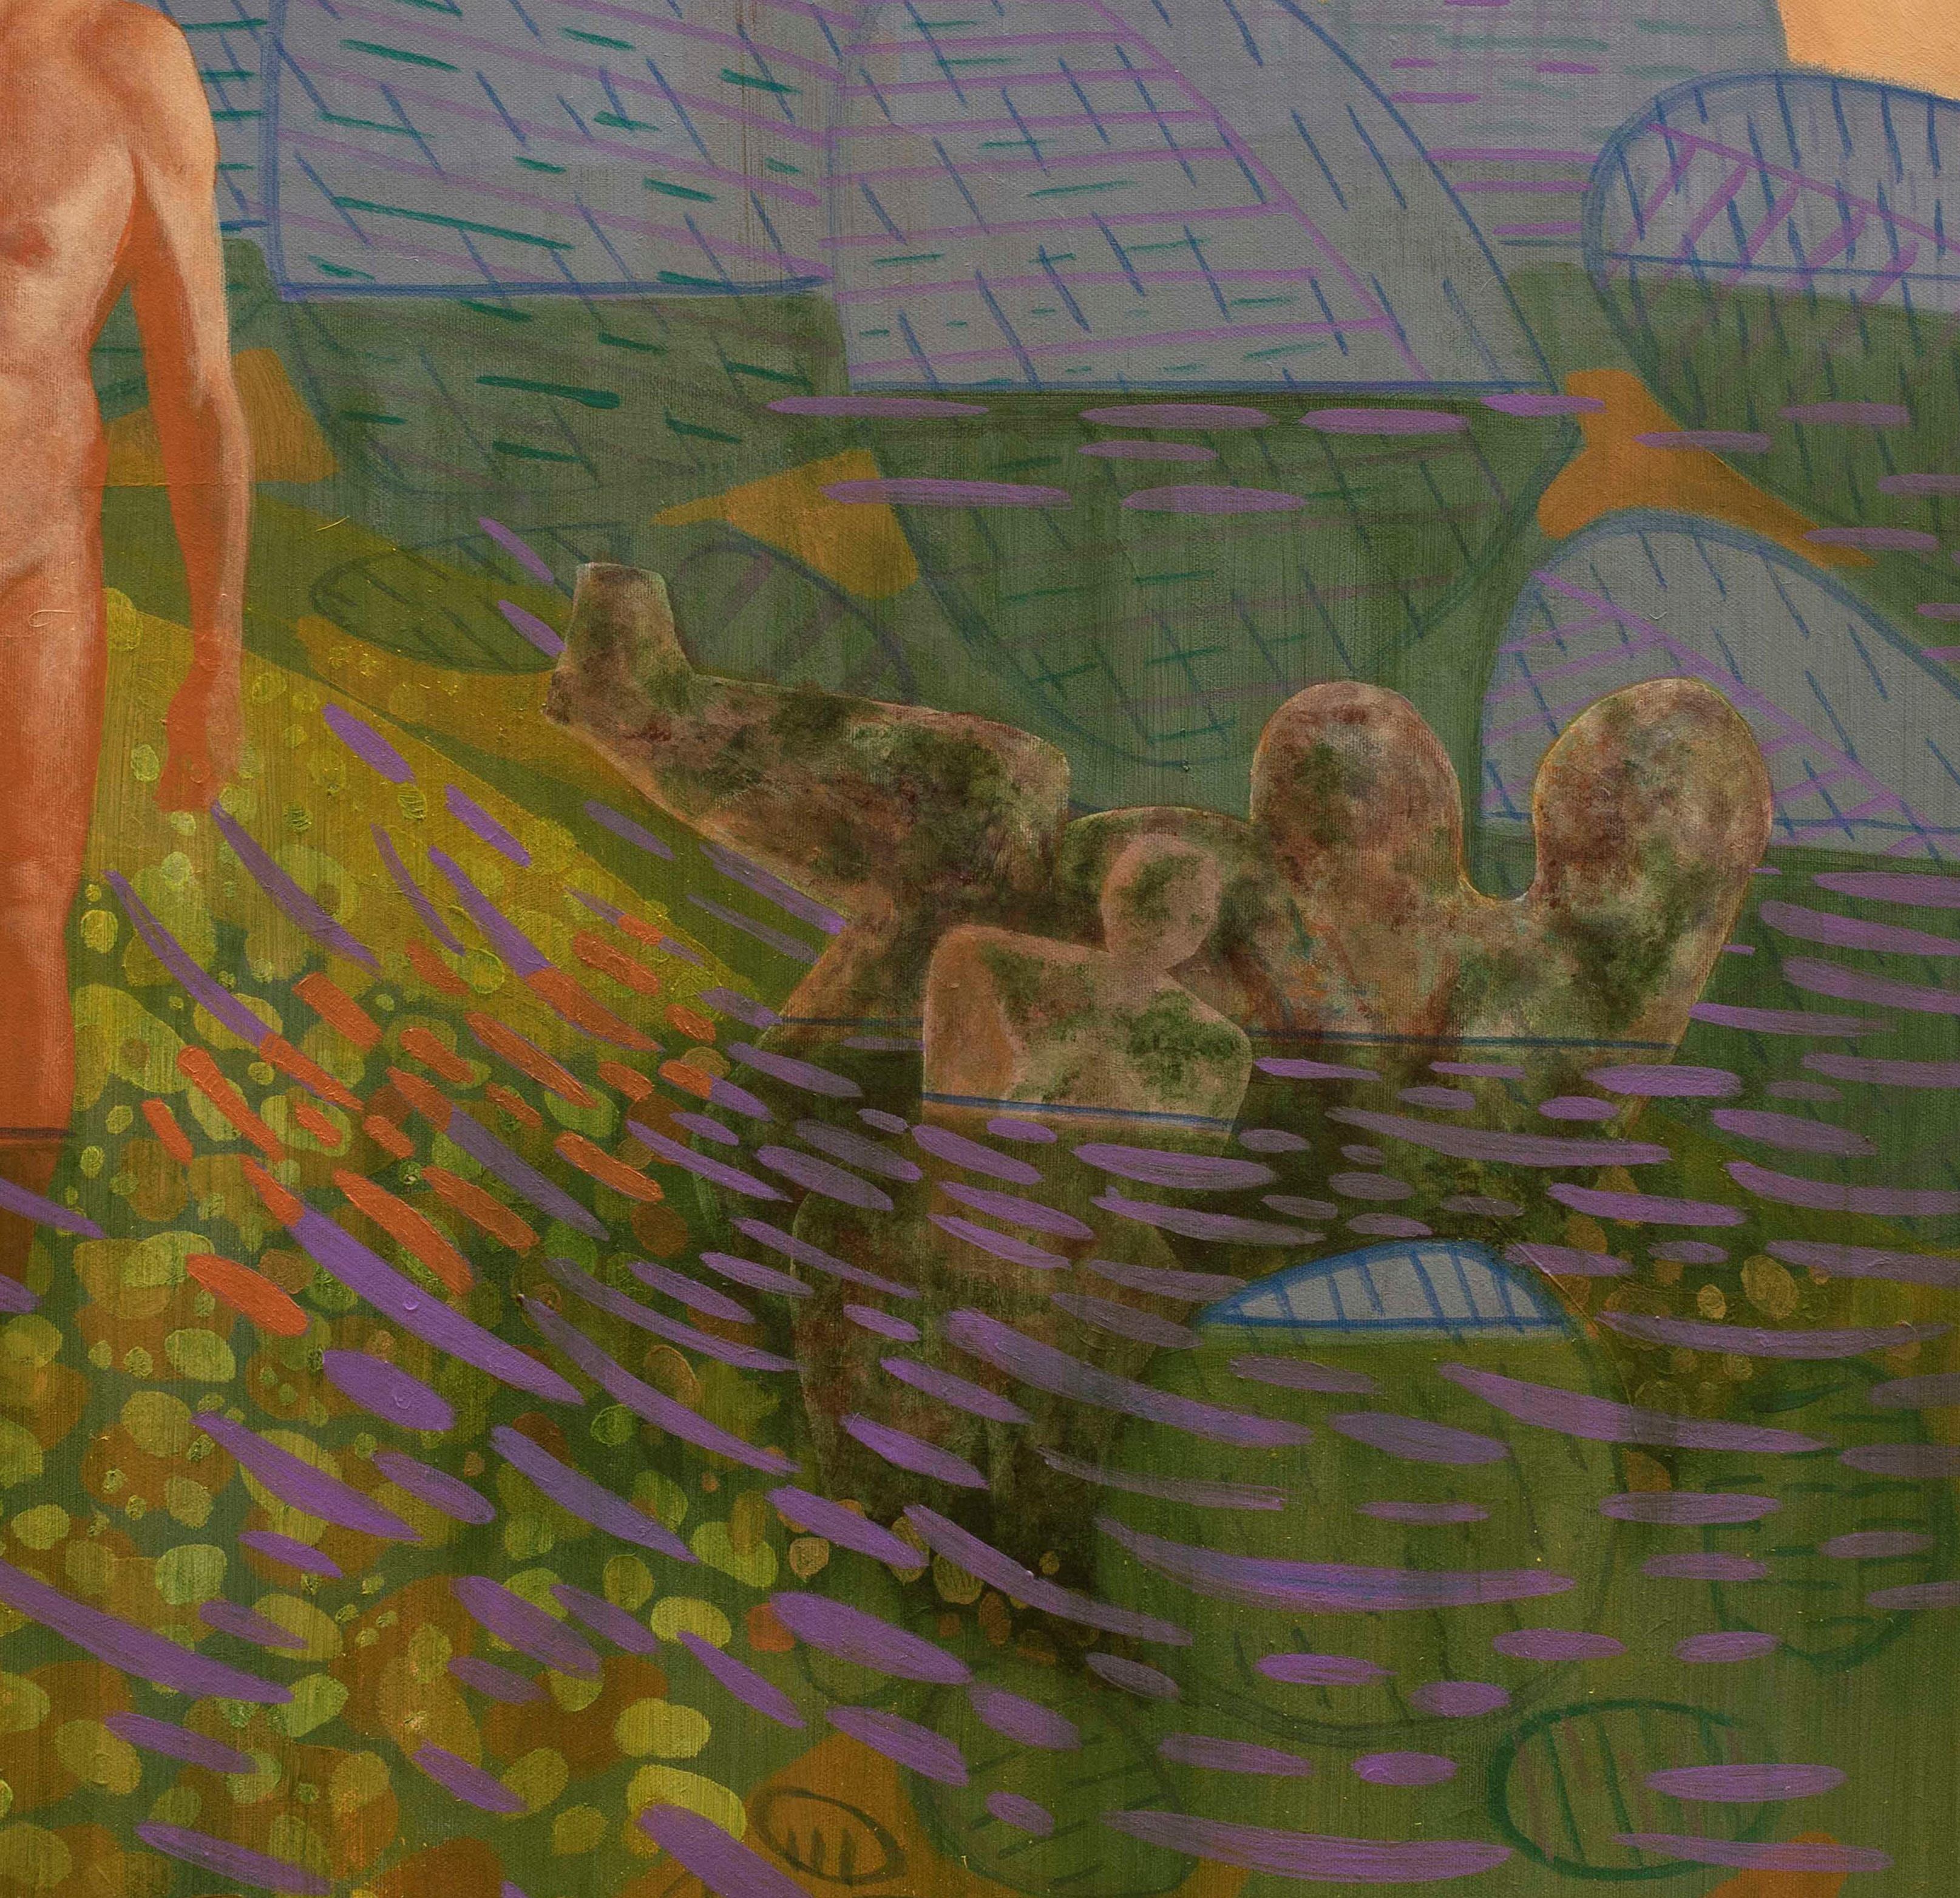 Idole Camouflage von Tide, 2020
acryl auf Leinwand
27 9/16 H x 27 9/16 W in.
70 H x 70 B cm

Die neue, von Alexandru Rădvan signierte Gemäldeserie entstand in der totalen Isolation des Jahres 2020. Freiheit in der Isolation ist Freiheit der